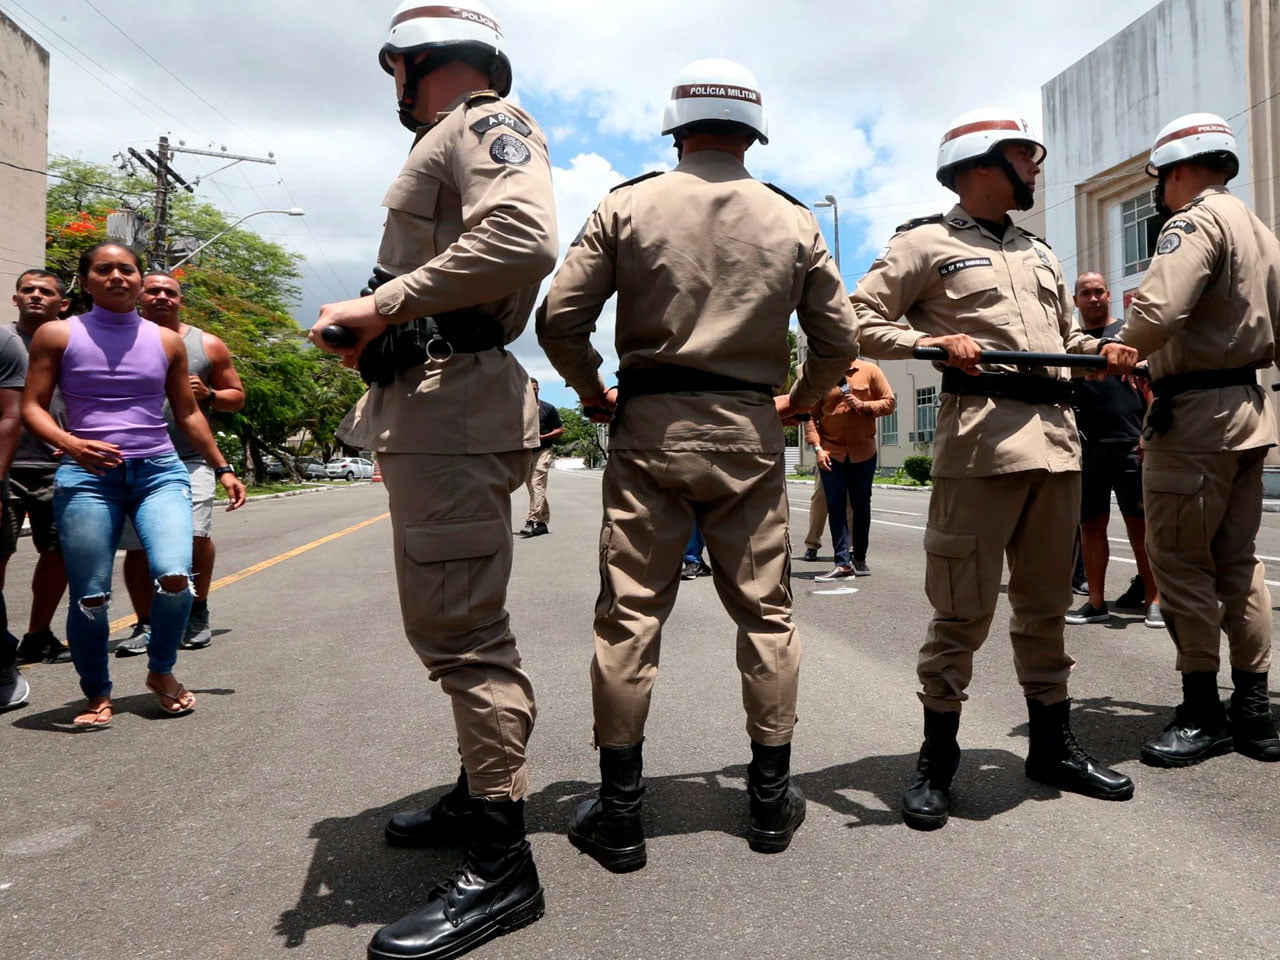 Advogada É Presa Em Flagrante Por Injúria Racial Contra Policial No Carnaval De Salvador